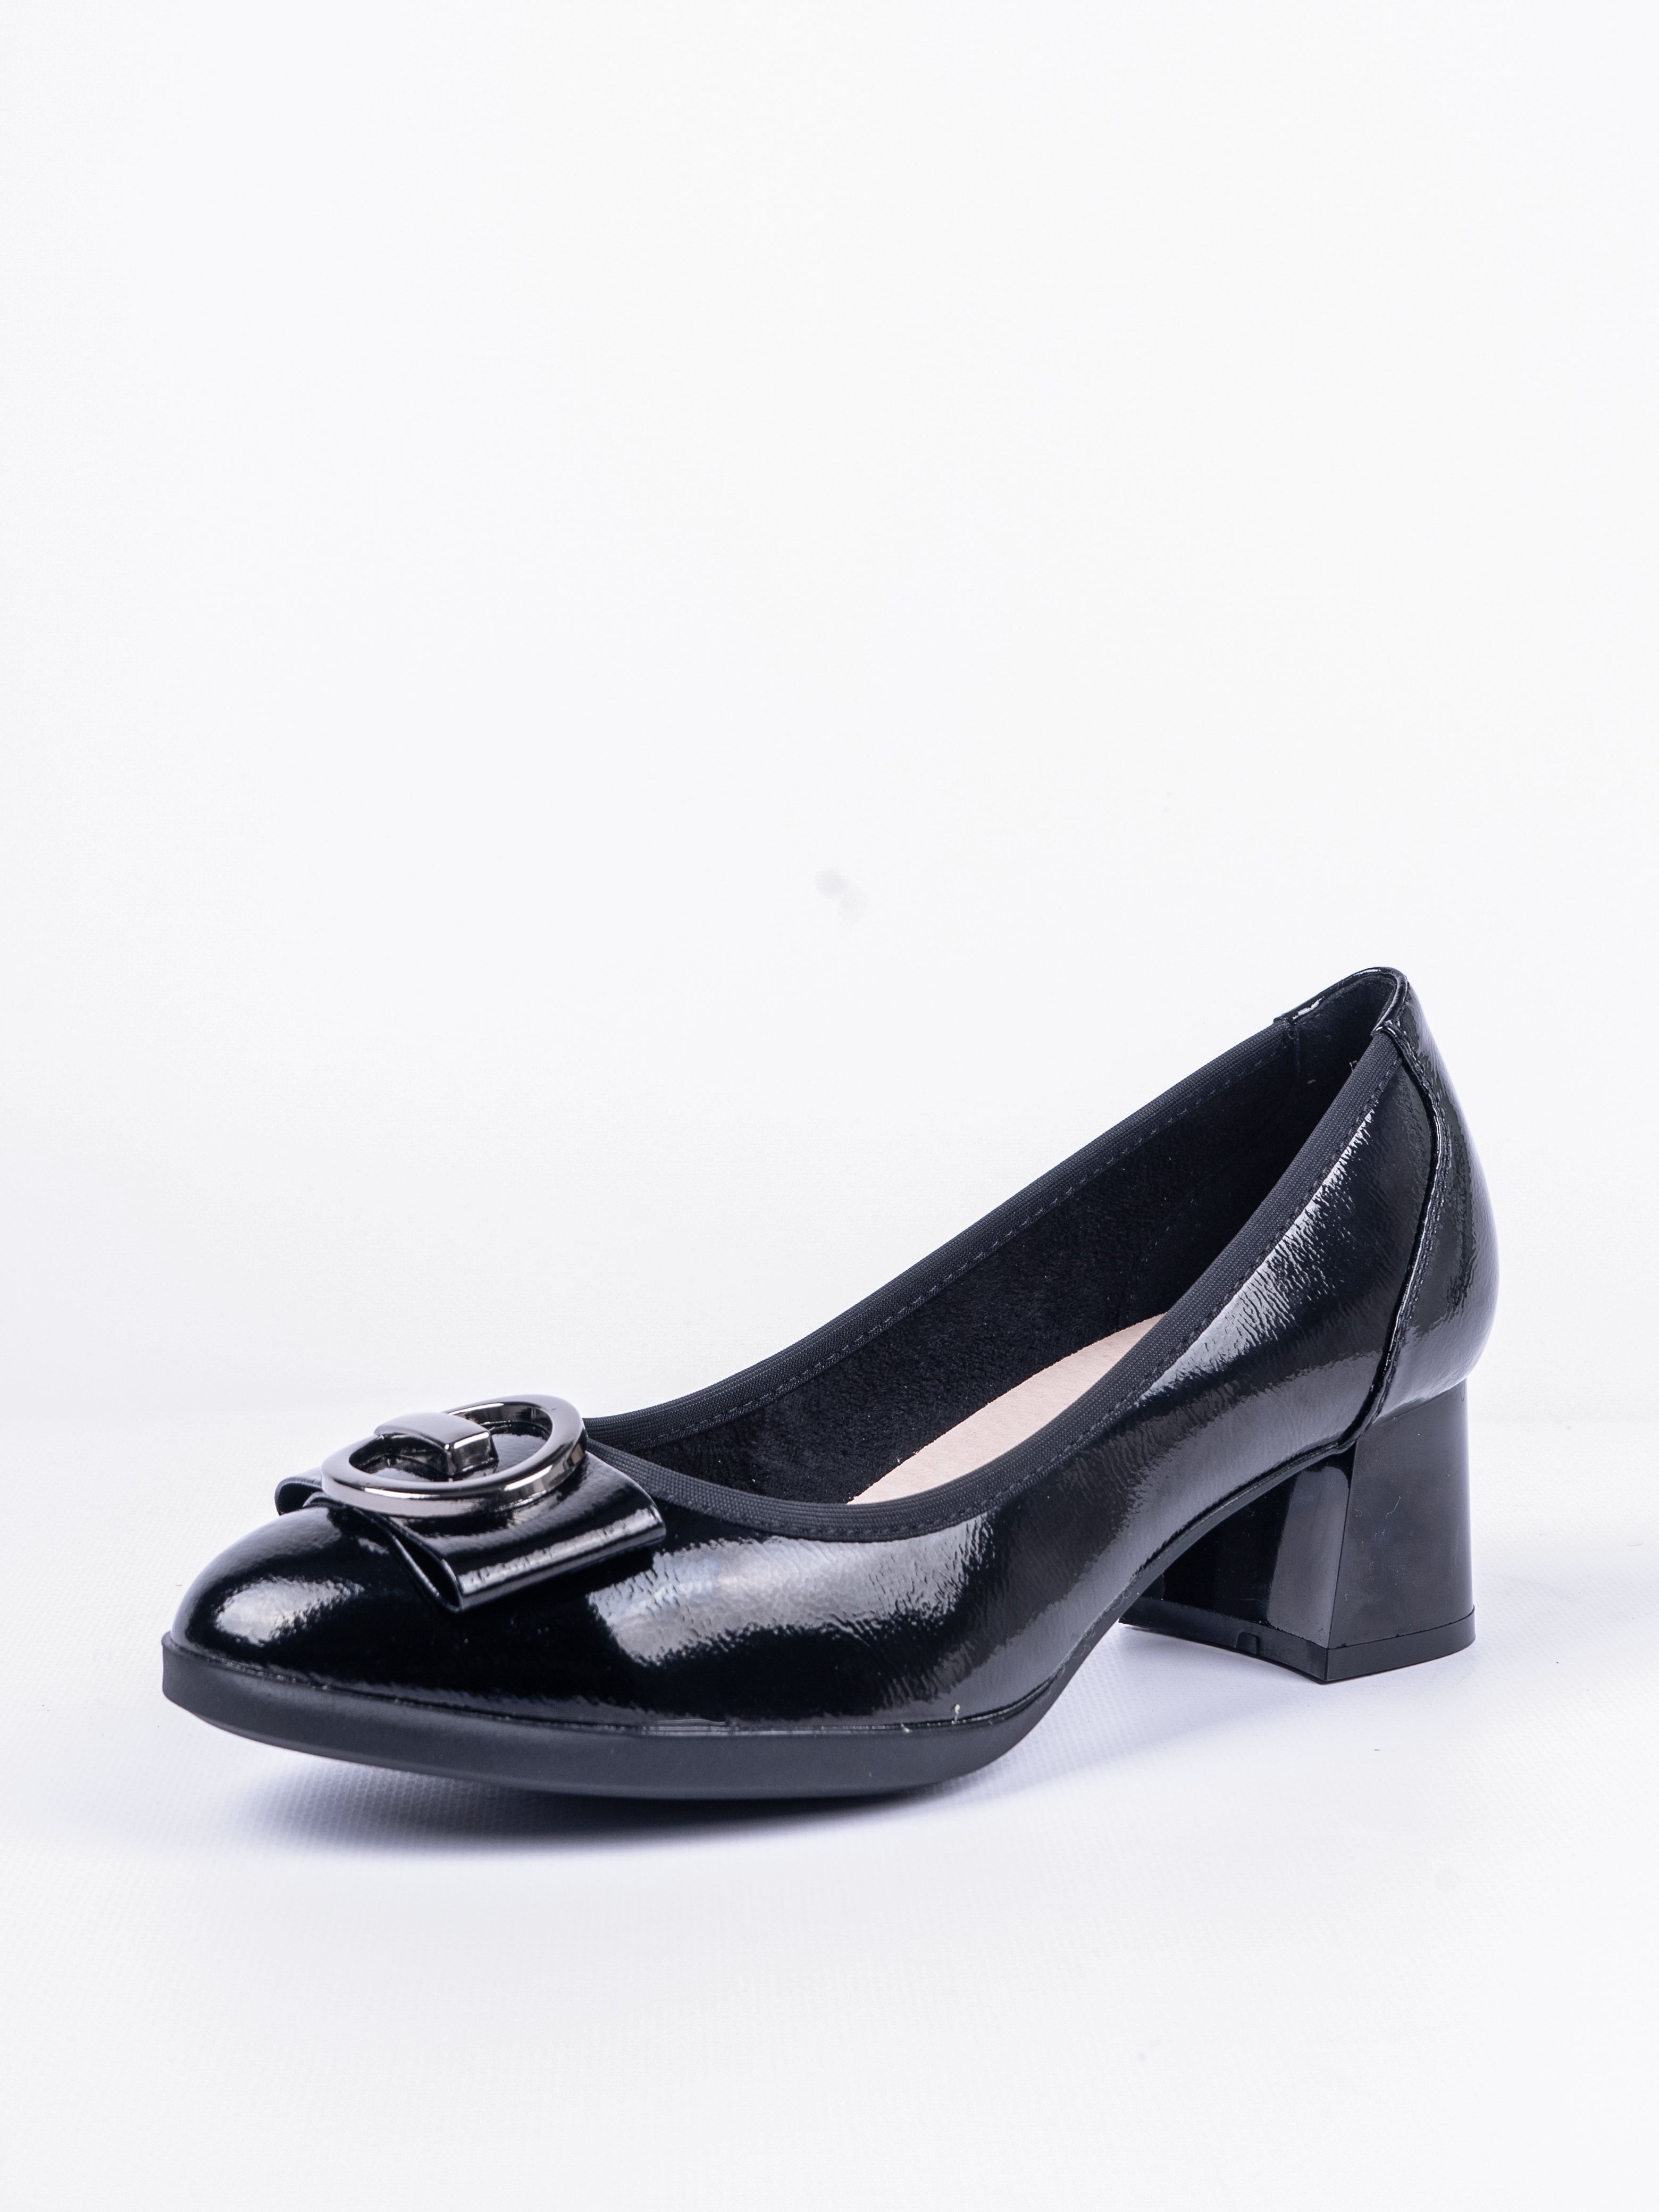 Туфли женские Baden RQ323-011 черные 37 RU